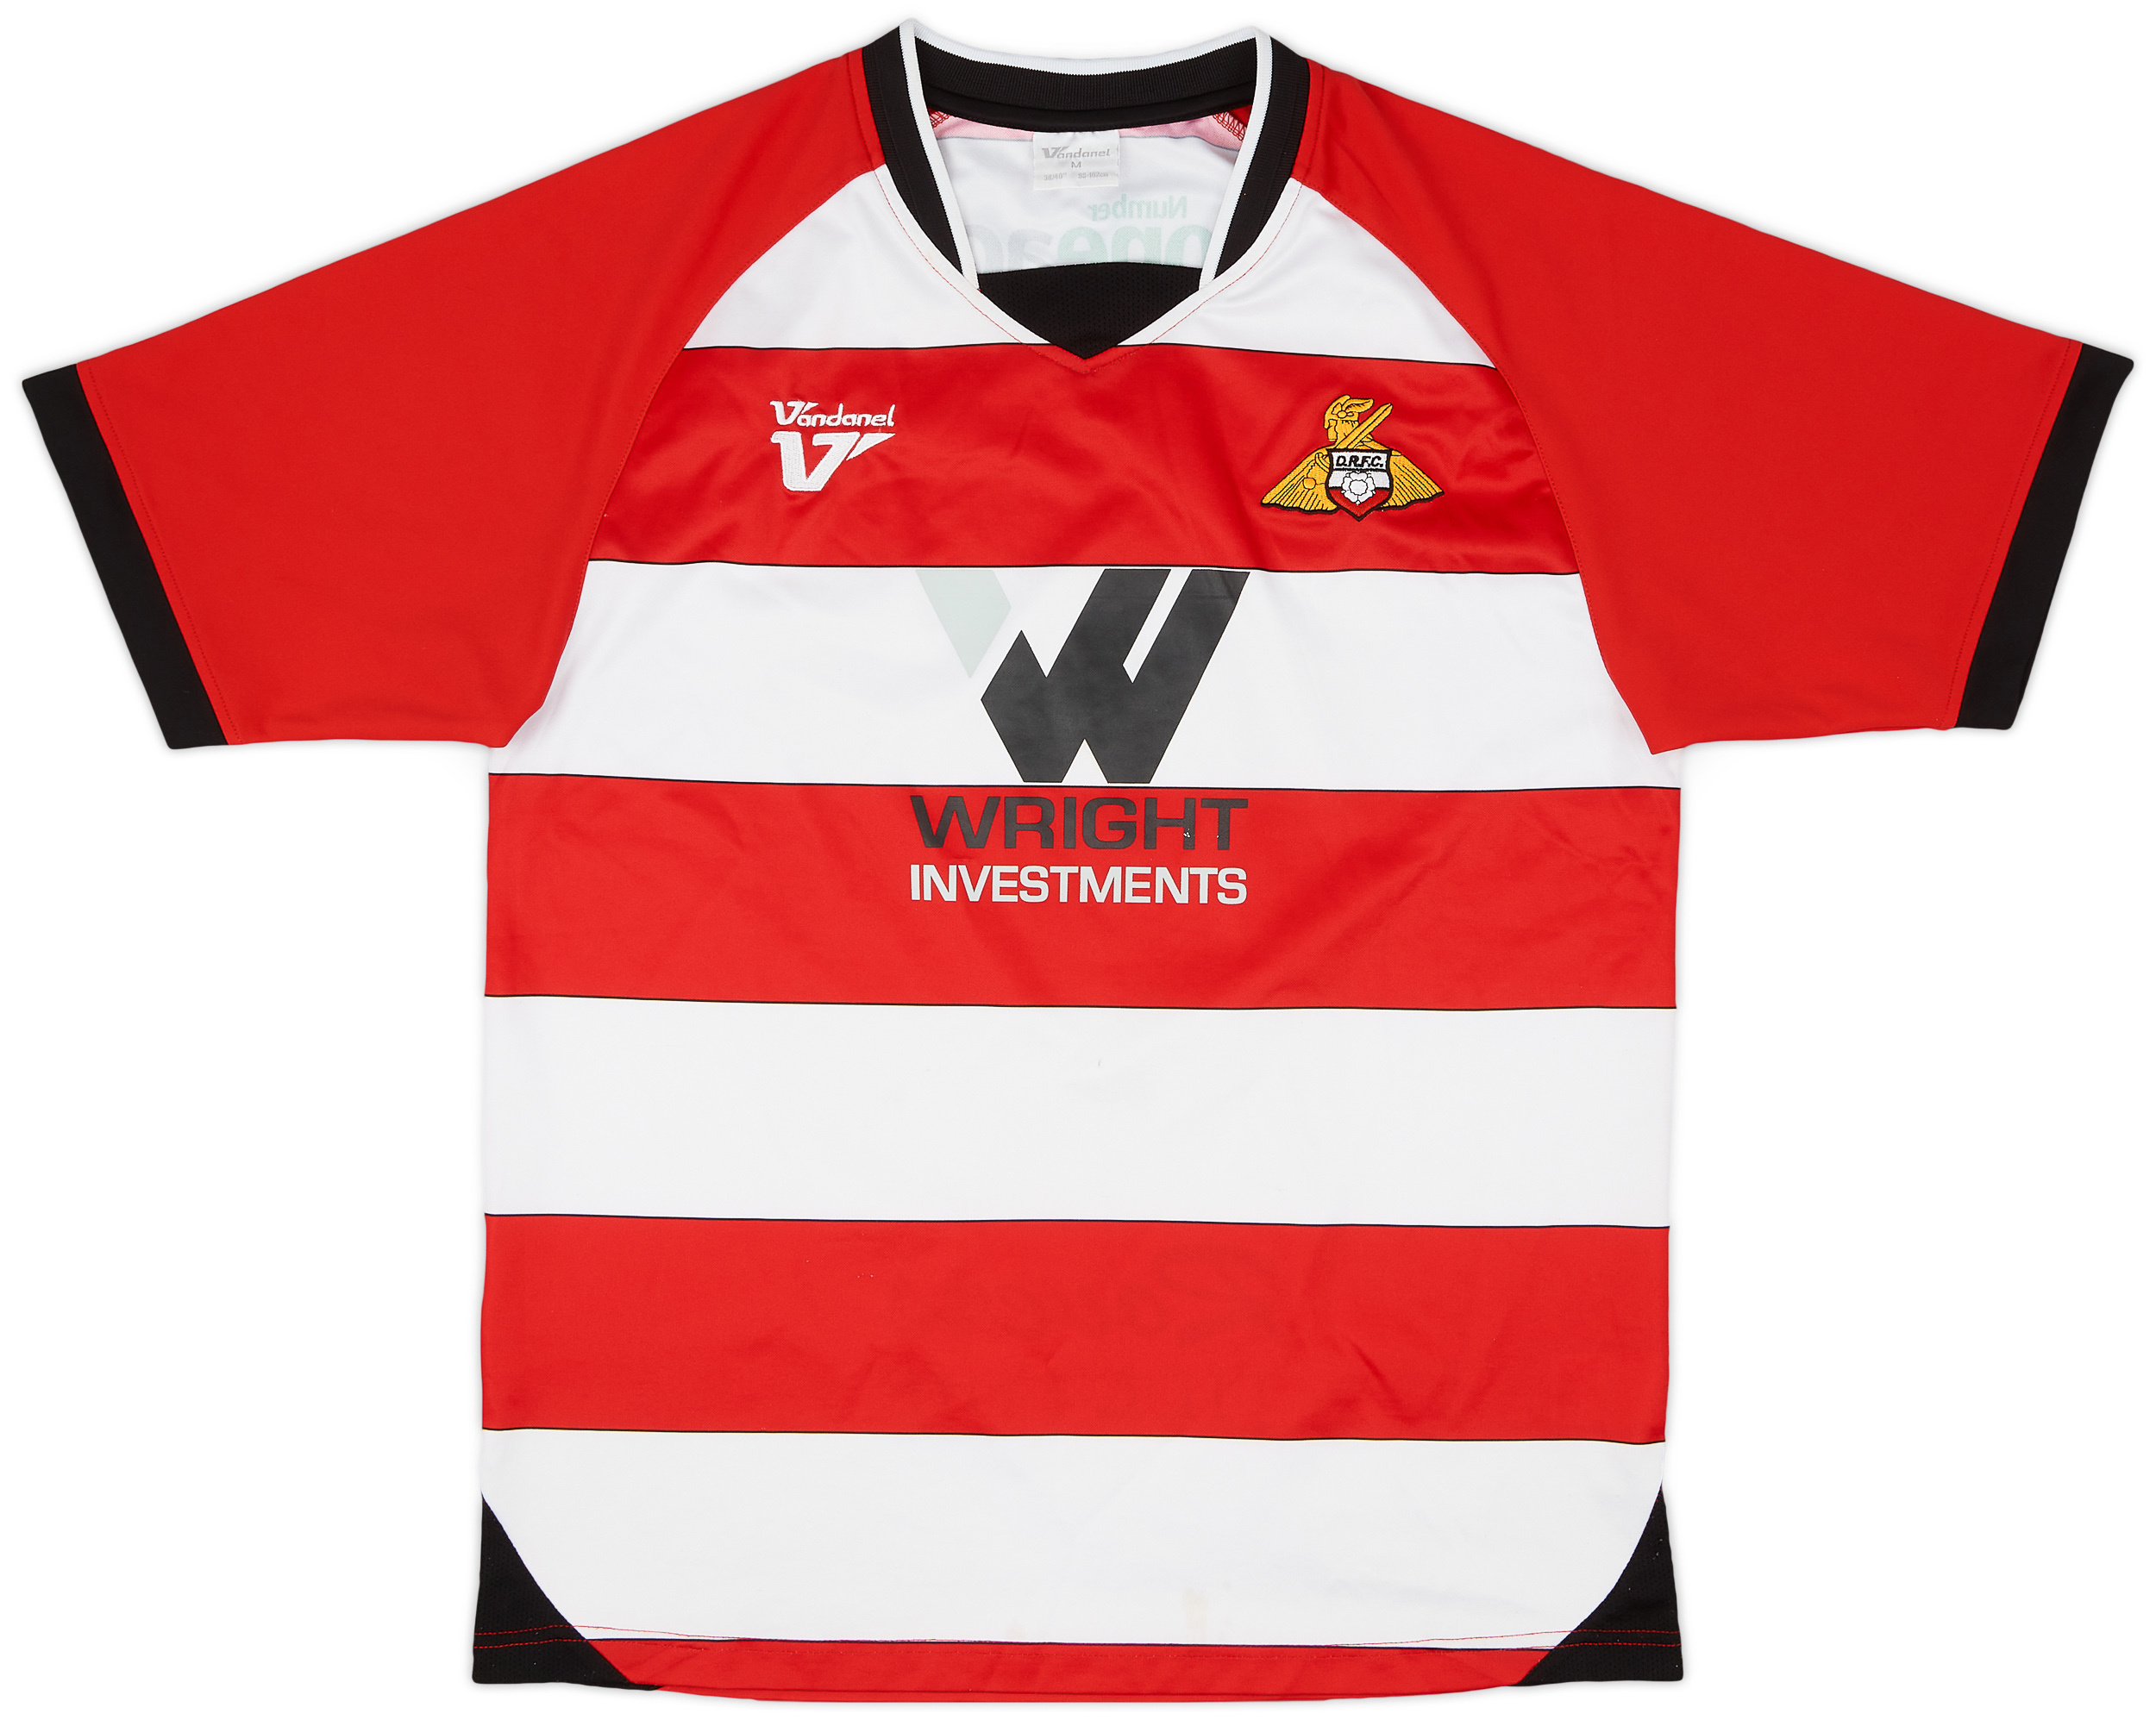 Retro Doncaster Rovers Shirt